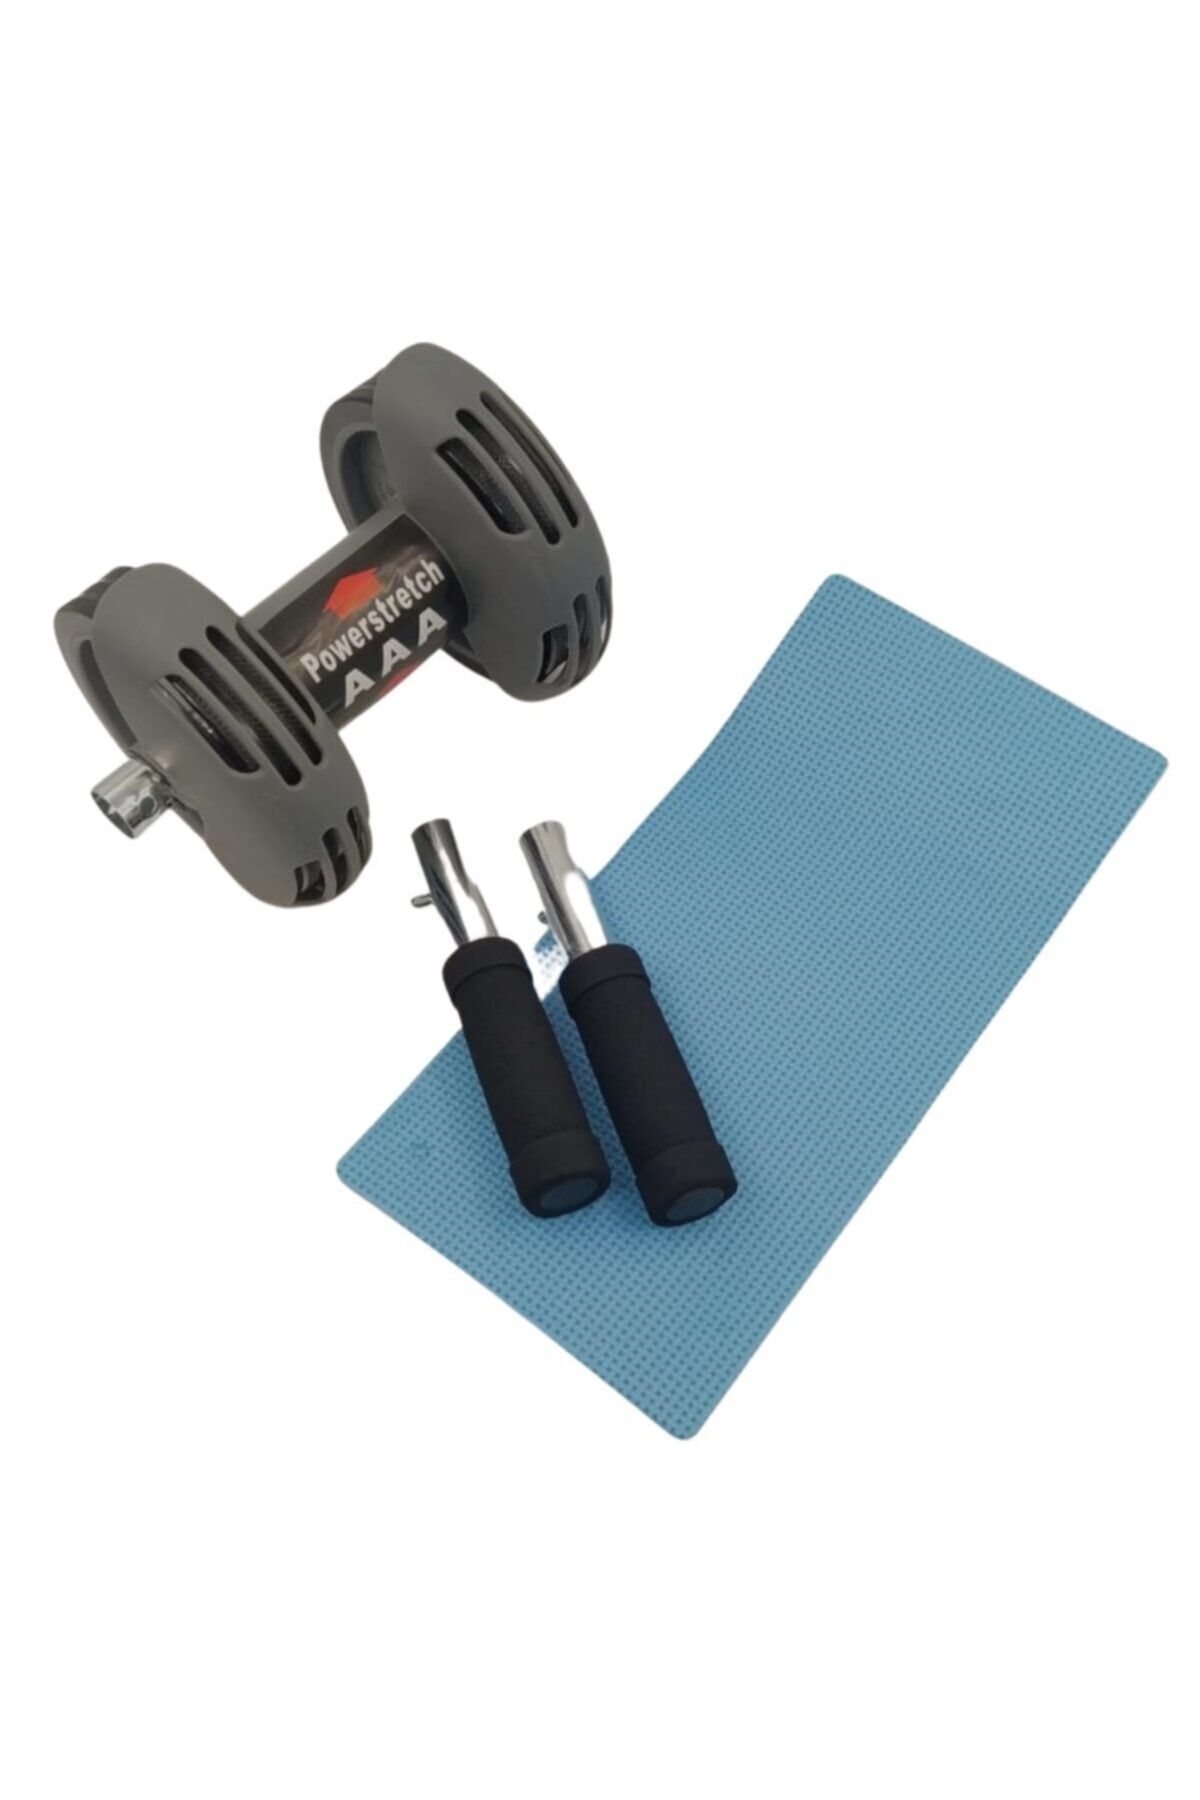 5DM Karın Kası Çalıştırıcı Fitness Egzersiz Spor Aleti Power Stretch Roller